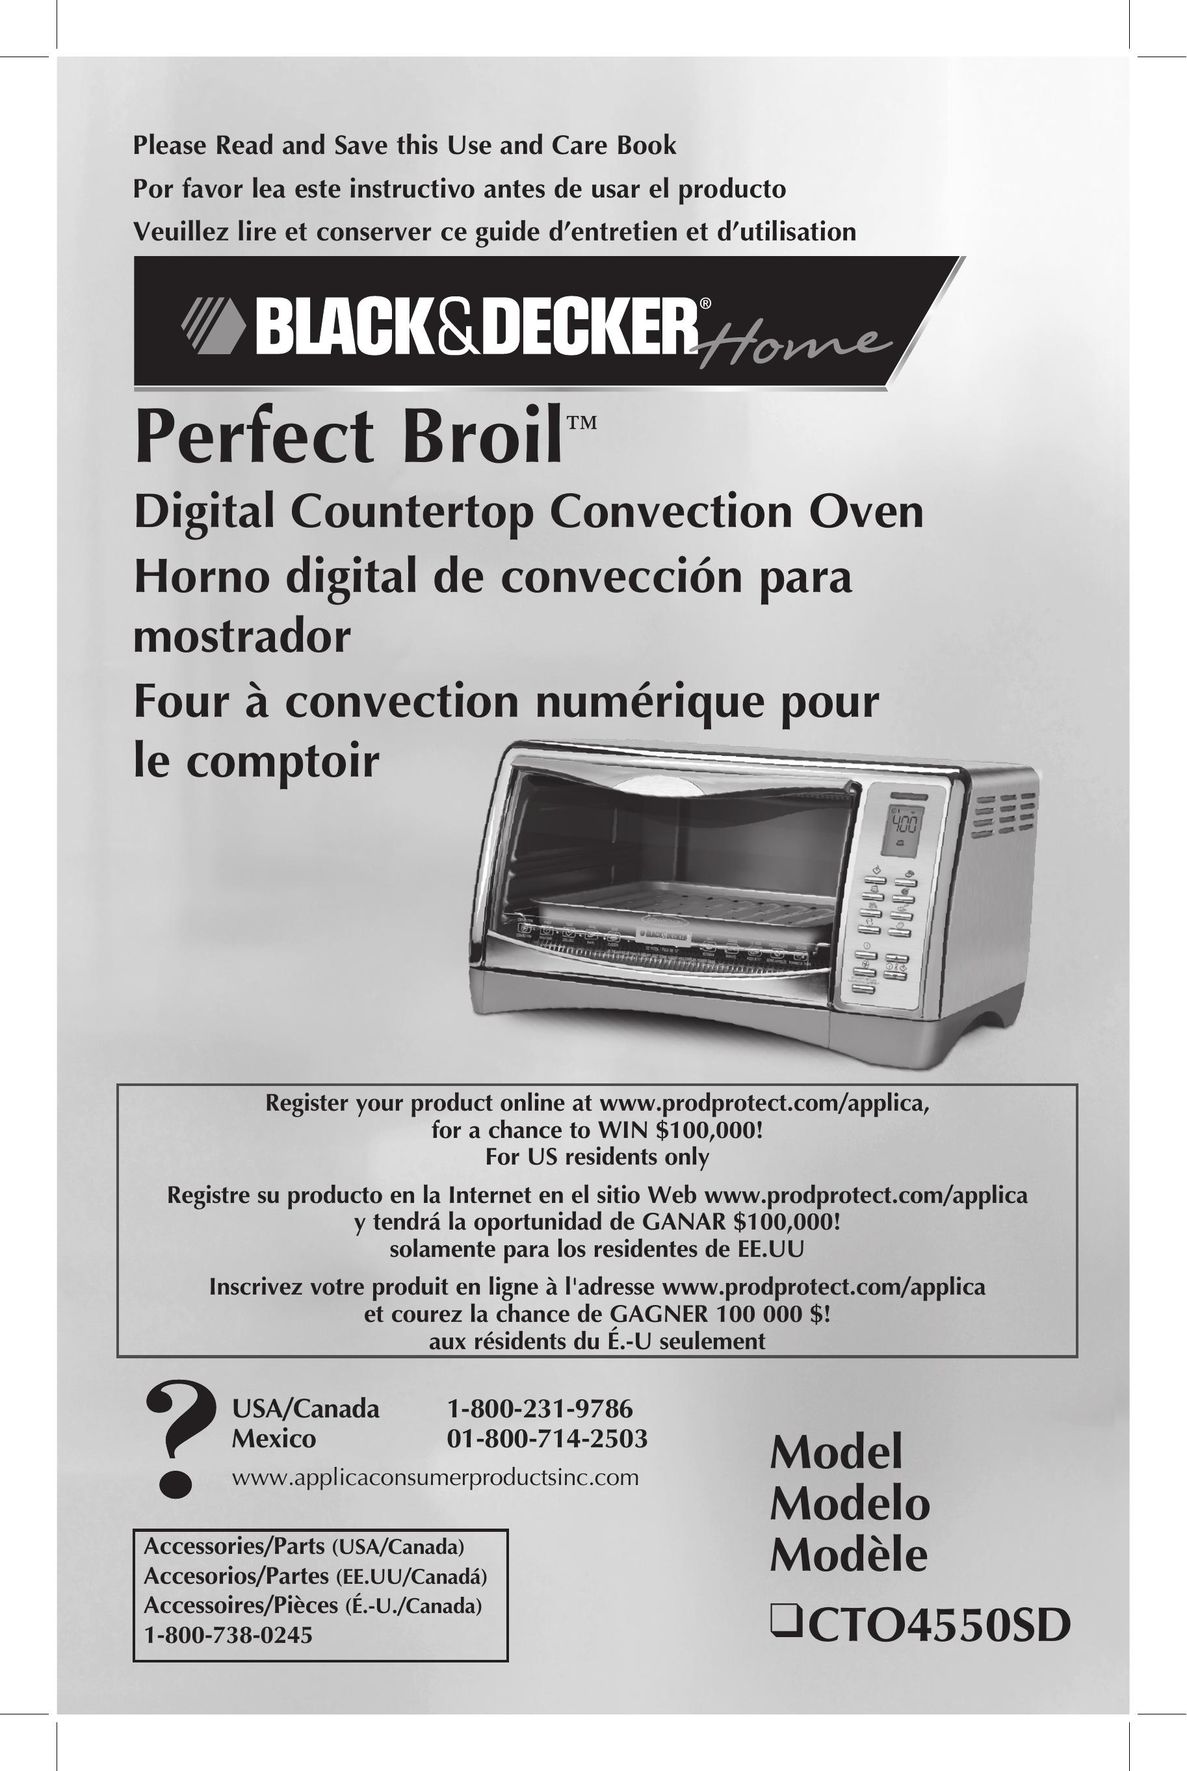 Black & Decker CTO4550SD Convection Oven User Manual